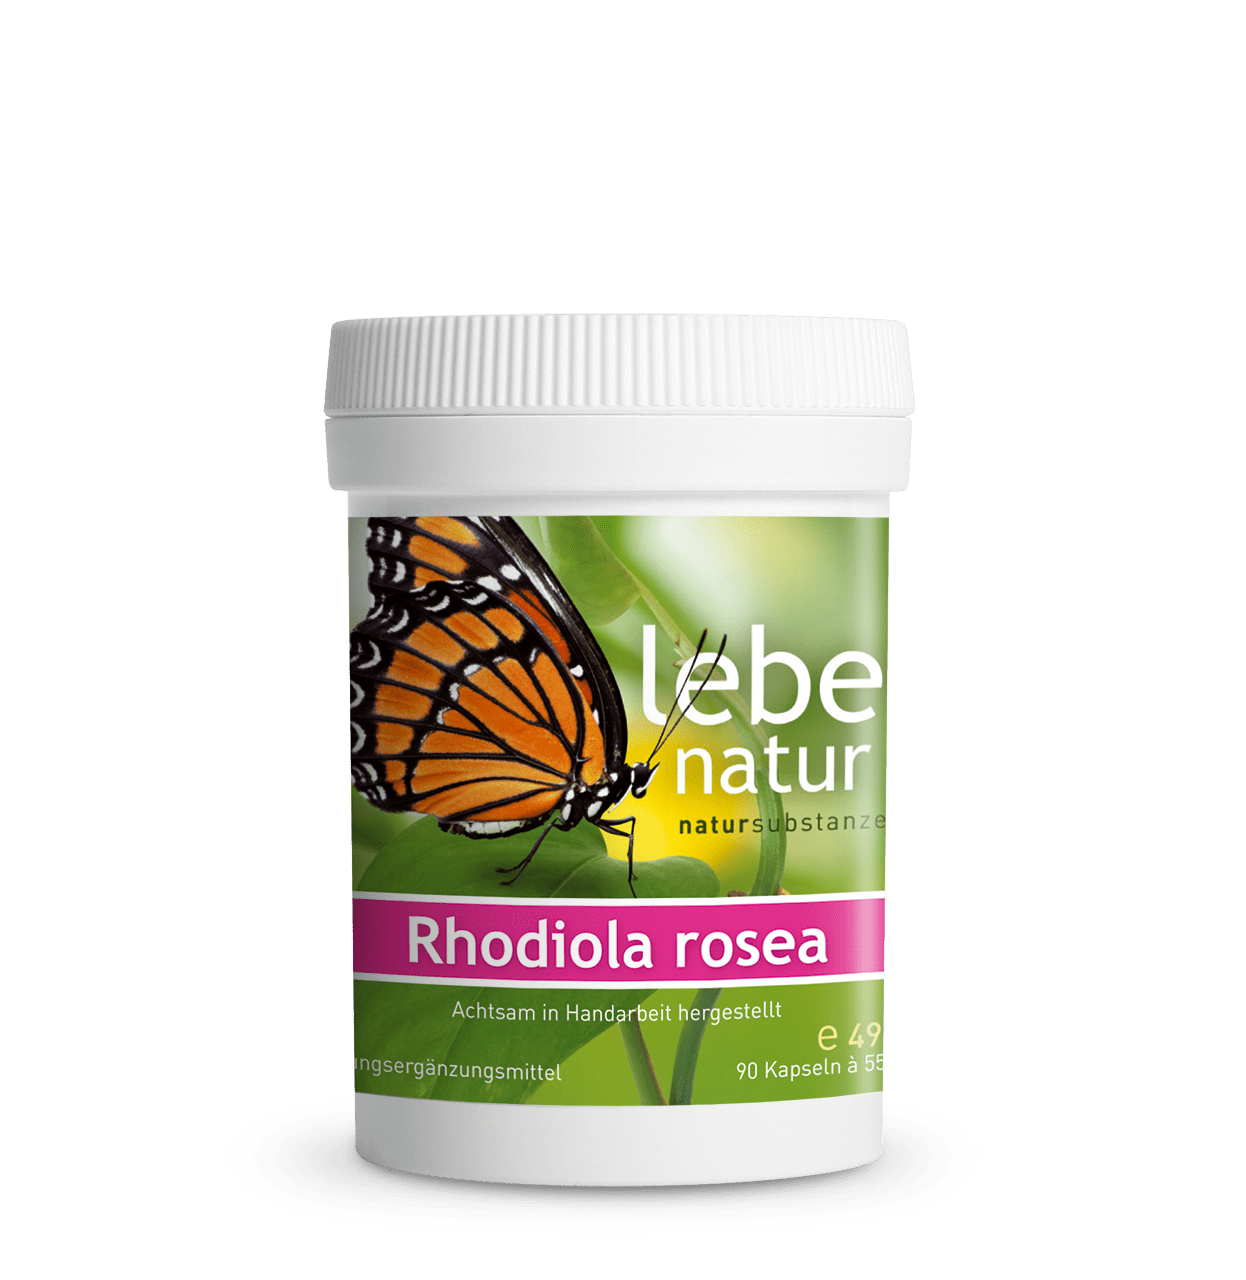 Rhodiola rosea – DOSE 90 KAPSEL à 550 mg